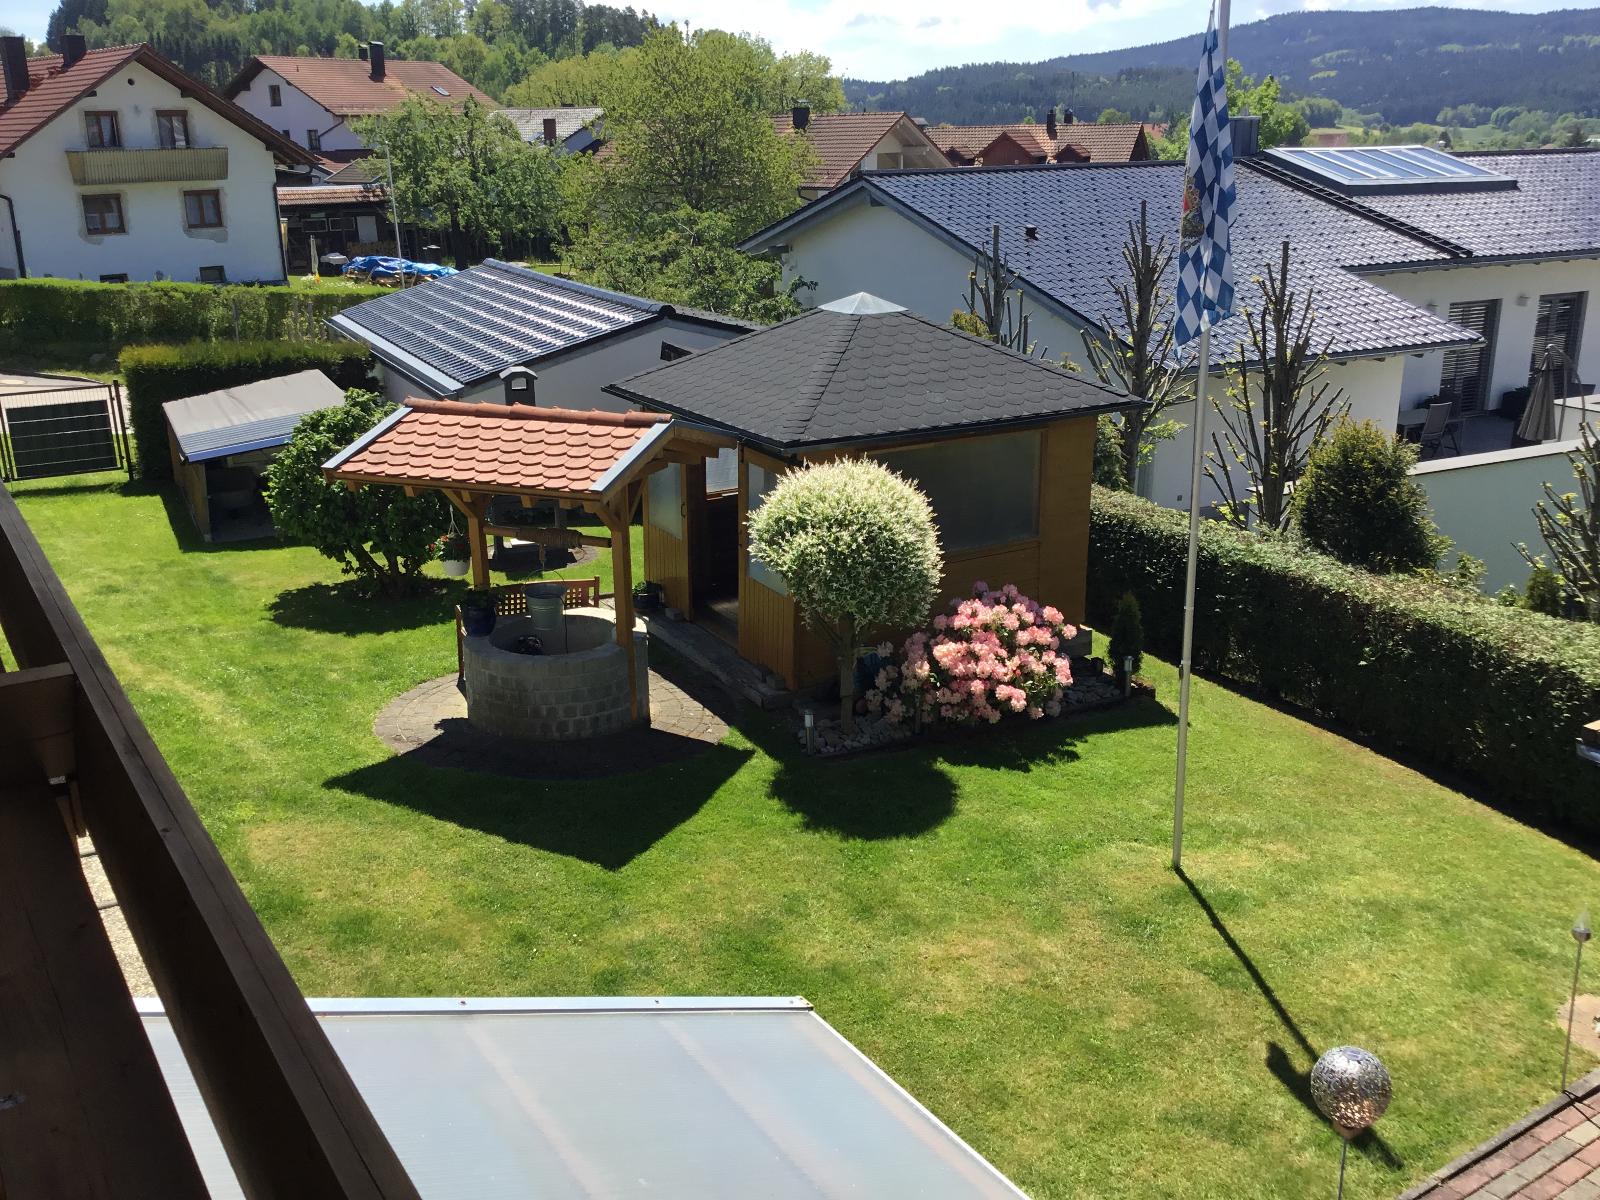 Ferienwohnungen Schellein in Blaibach